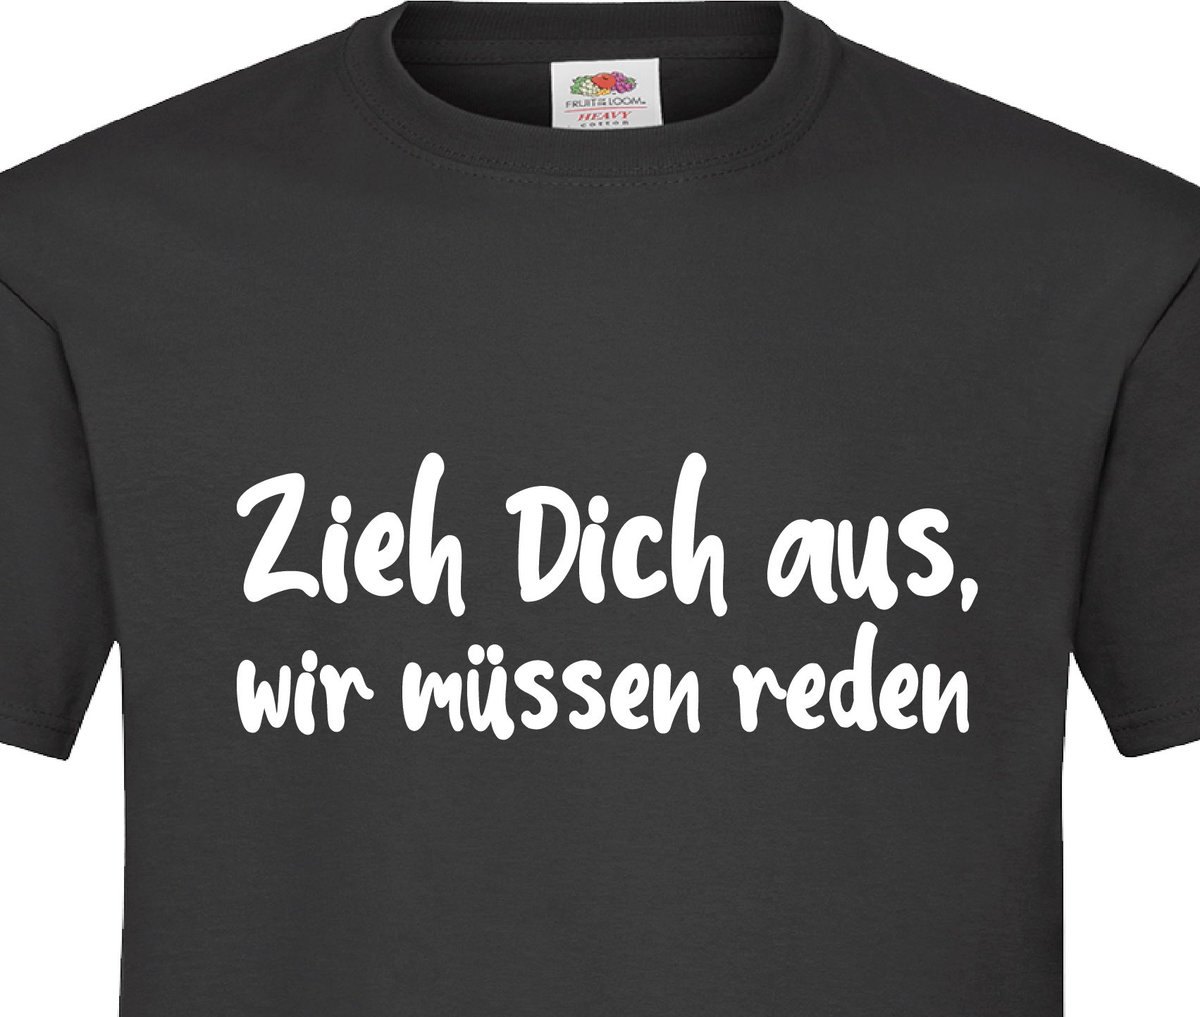 Wenn es mal wieder schnell gehen muss 
#ShirtdesTages 
Shop: pogobaer.de/Ausziehen.html